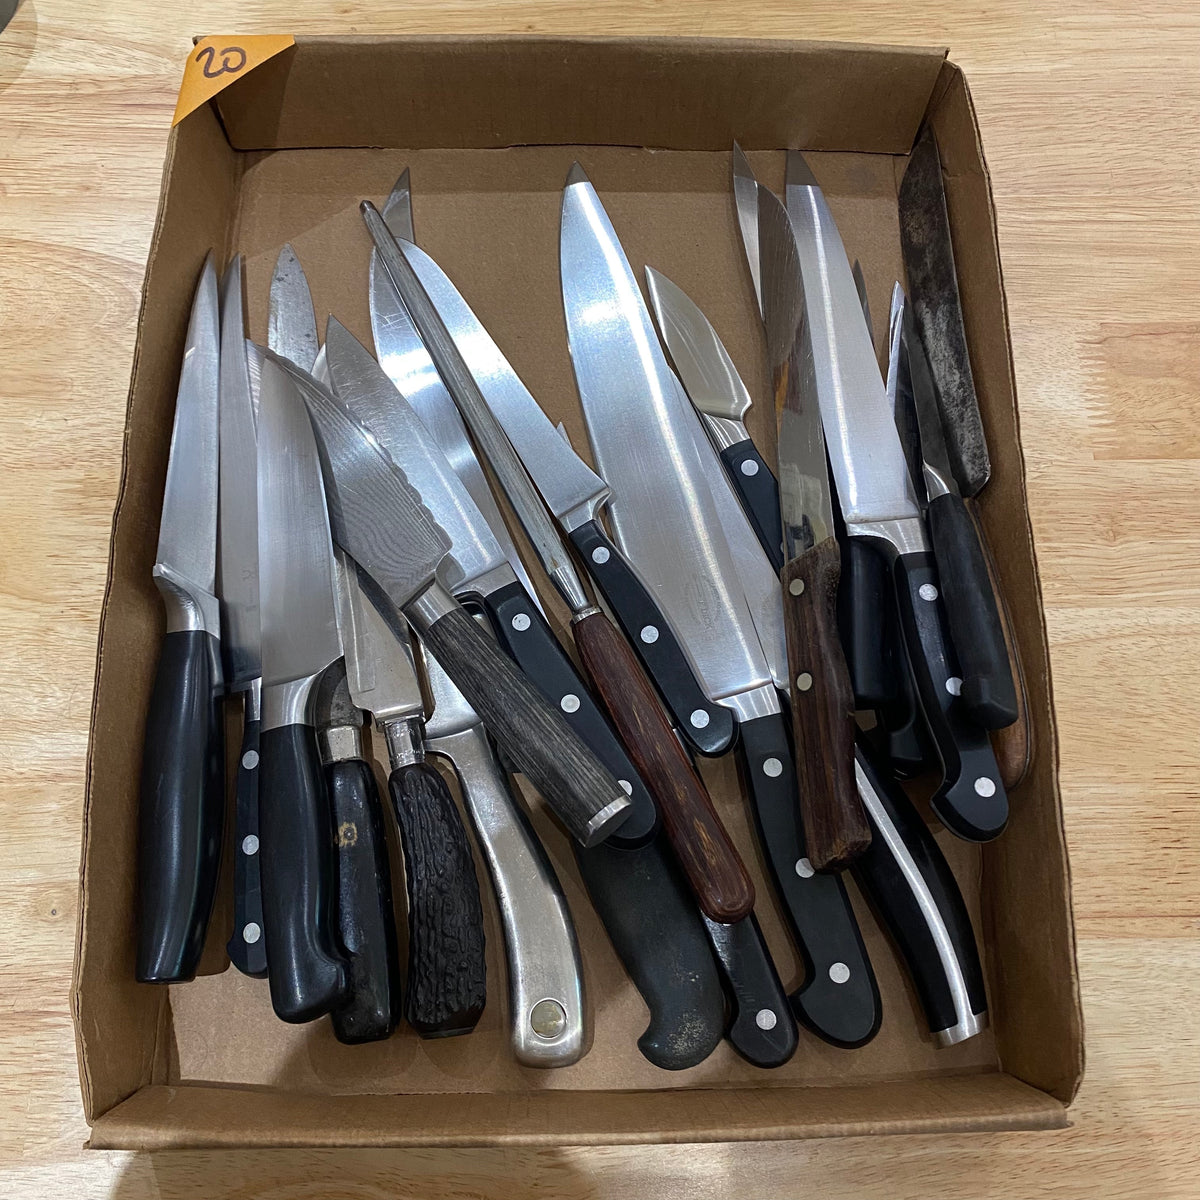 Bargain Bin Knife - $20 each